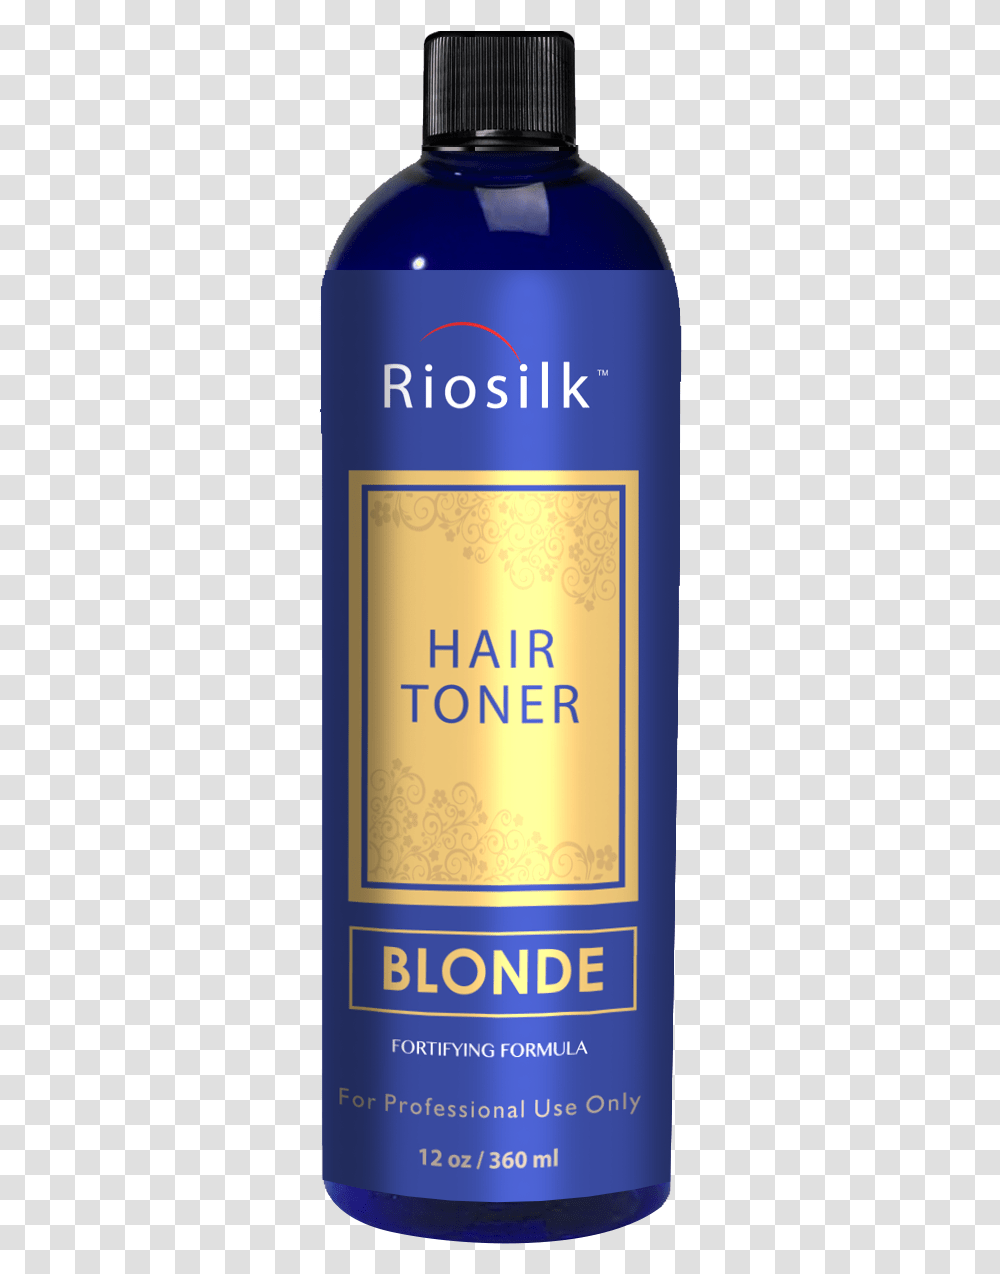 Riosilk Blonde Toner 3d Toner Shampoo, Bottle, Beverage, Alcohol, Wine Transparent Png